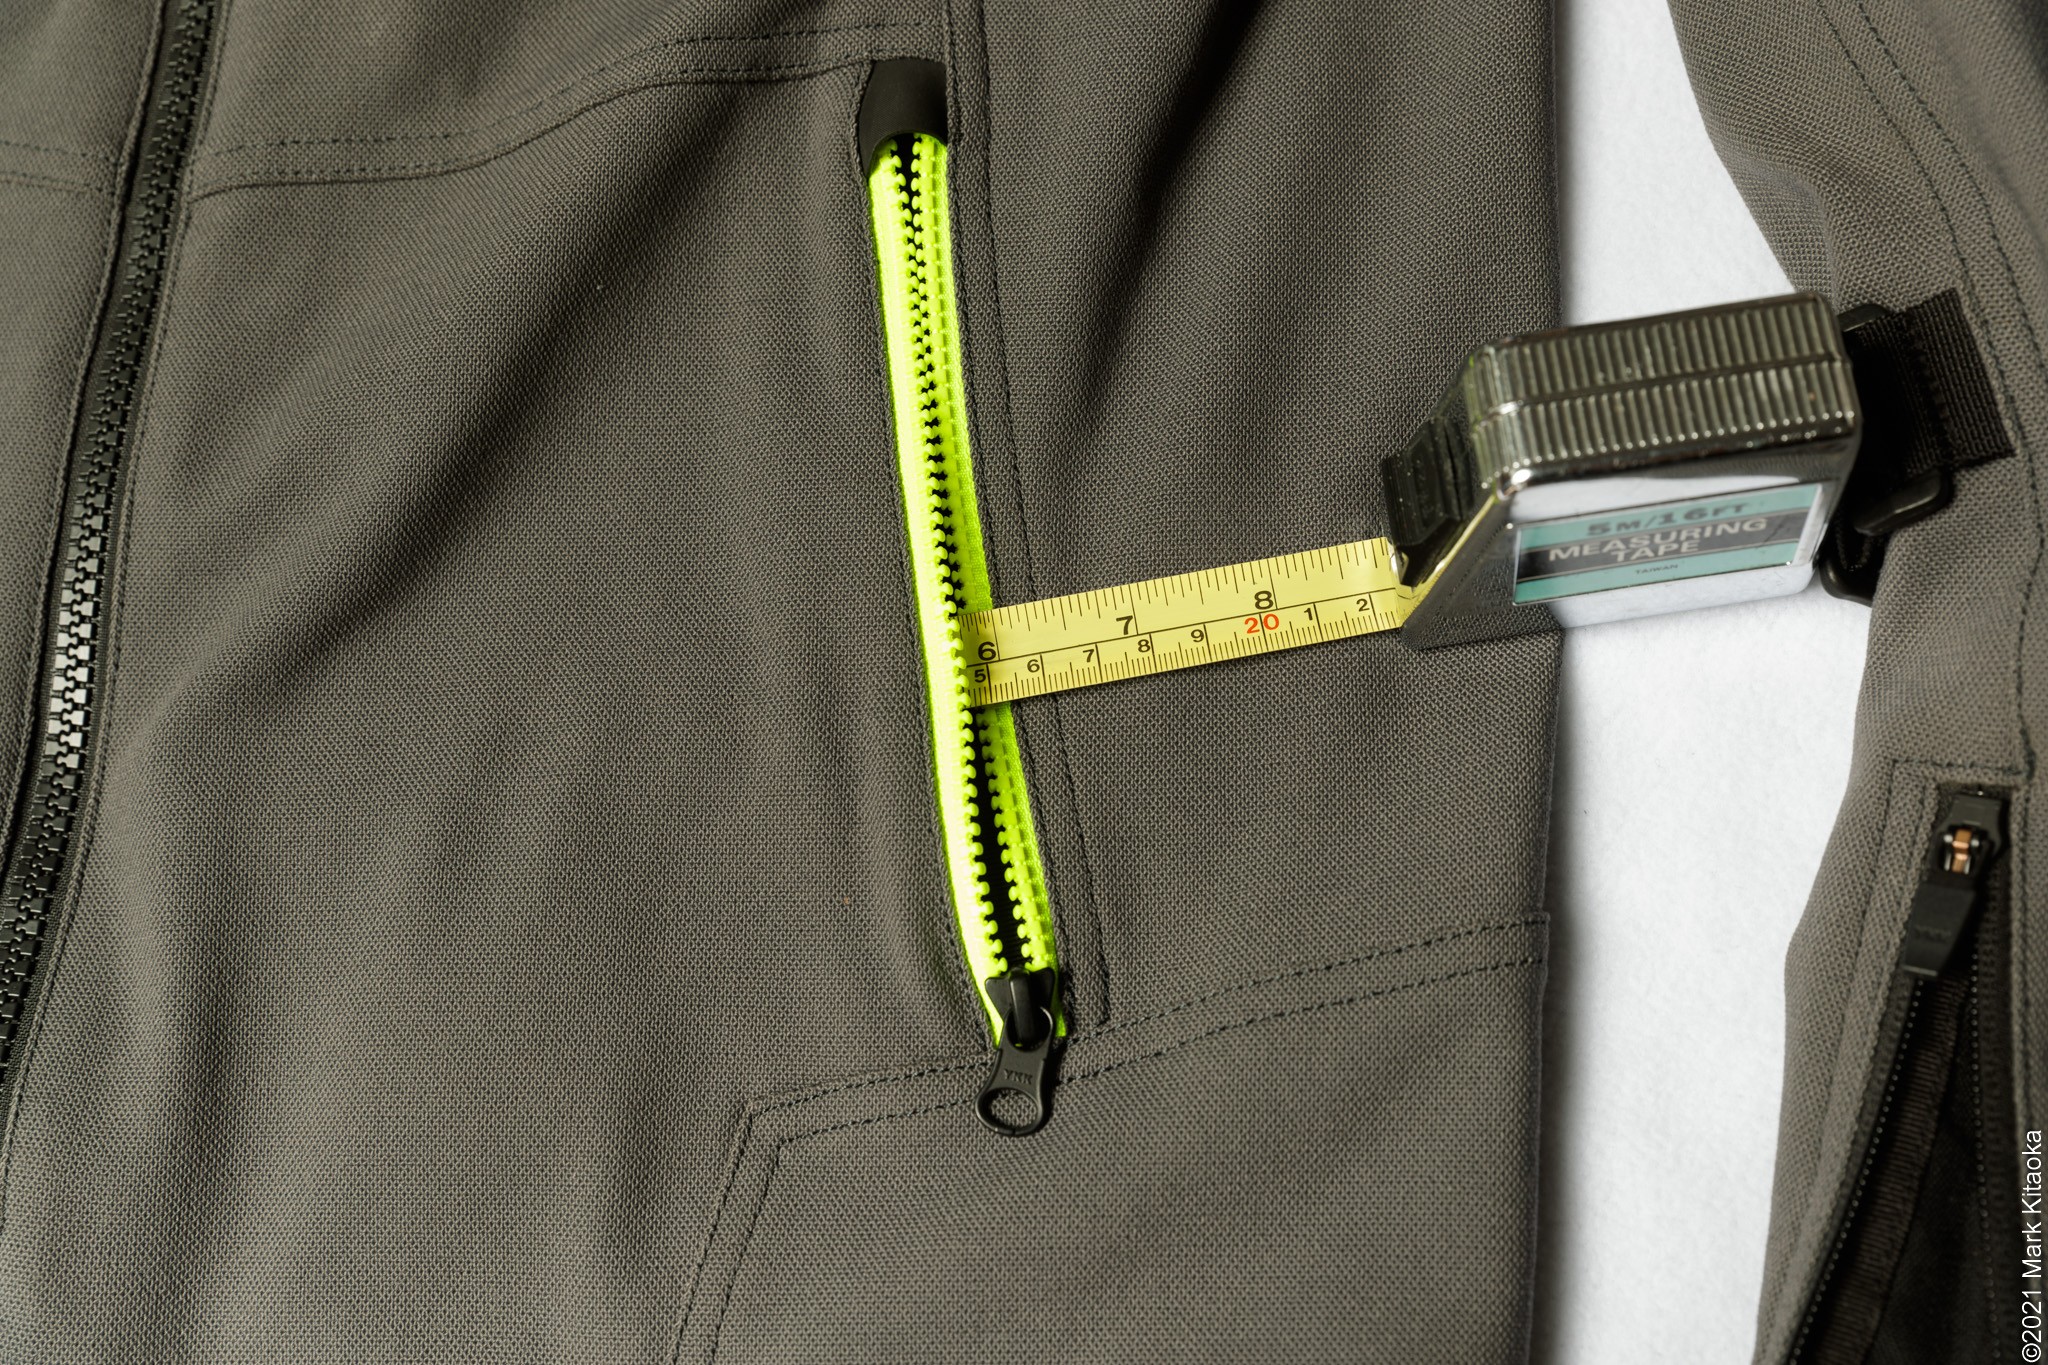 Measuring tape showing 6" of depth for the Klim jacket pocket